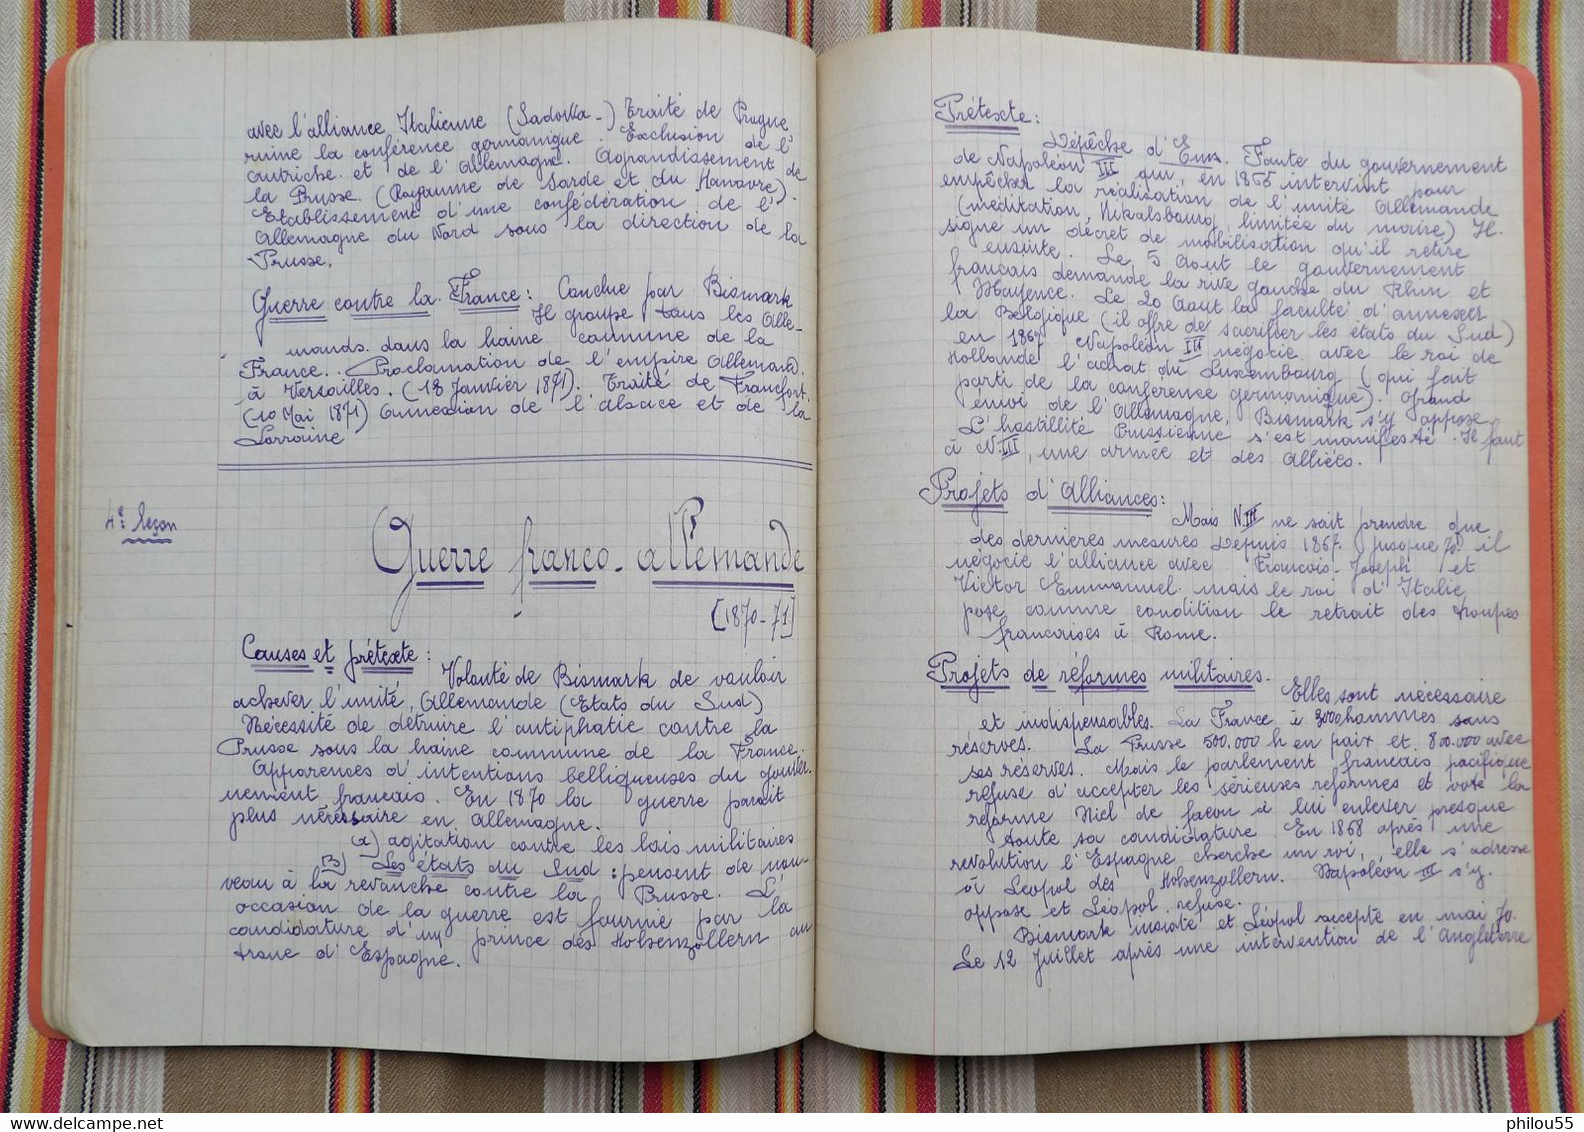 02 BOHAIN Ancien cahier d'Ecole Primaire Superieure Professionnelle Le Scientifique1925 Histoire  Ch. Renverser